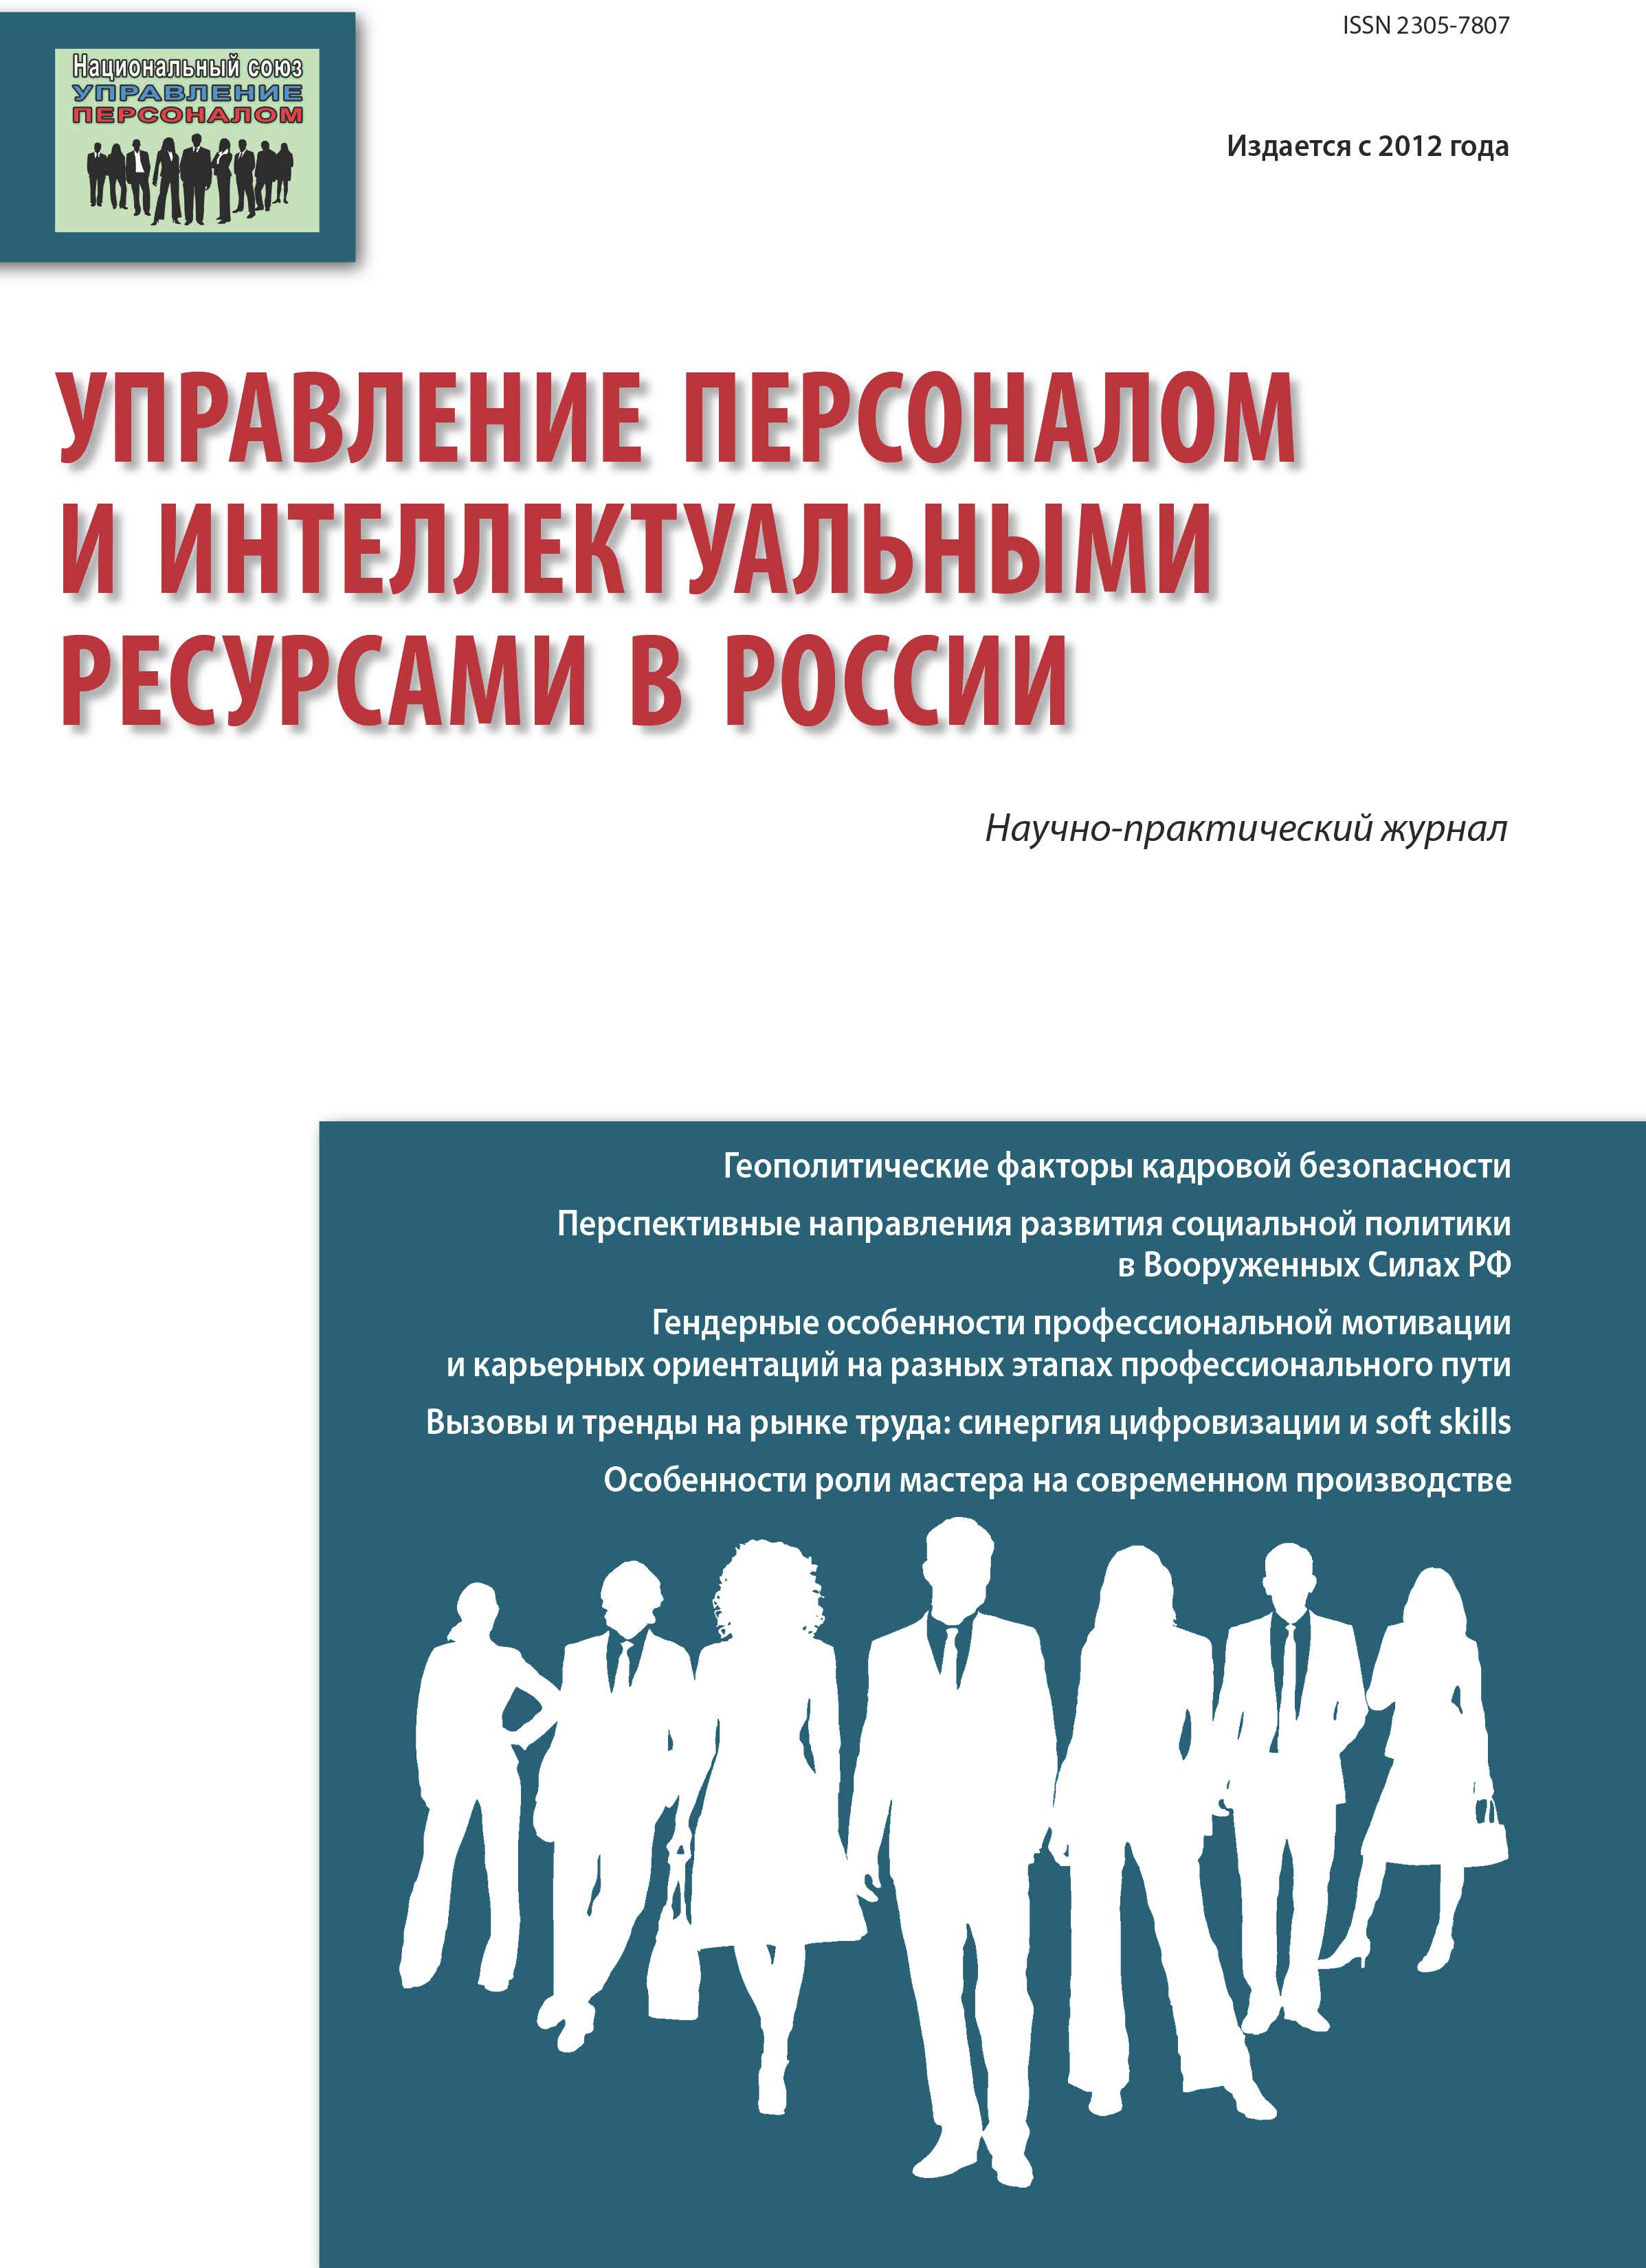             Социологическая модель делового пространства российского предпринимателя (Часть 2)
    